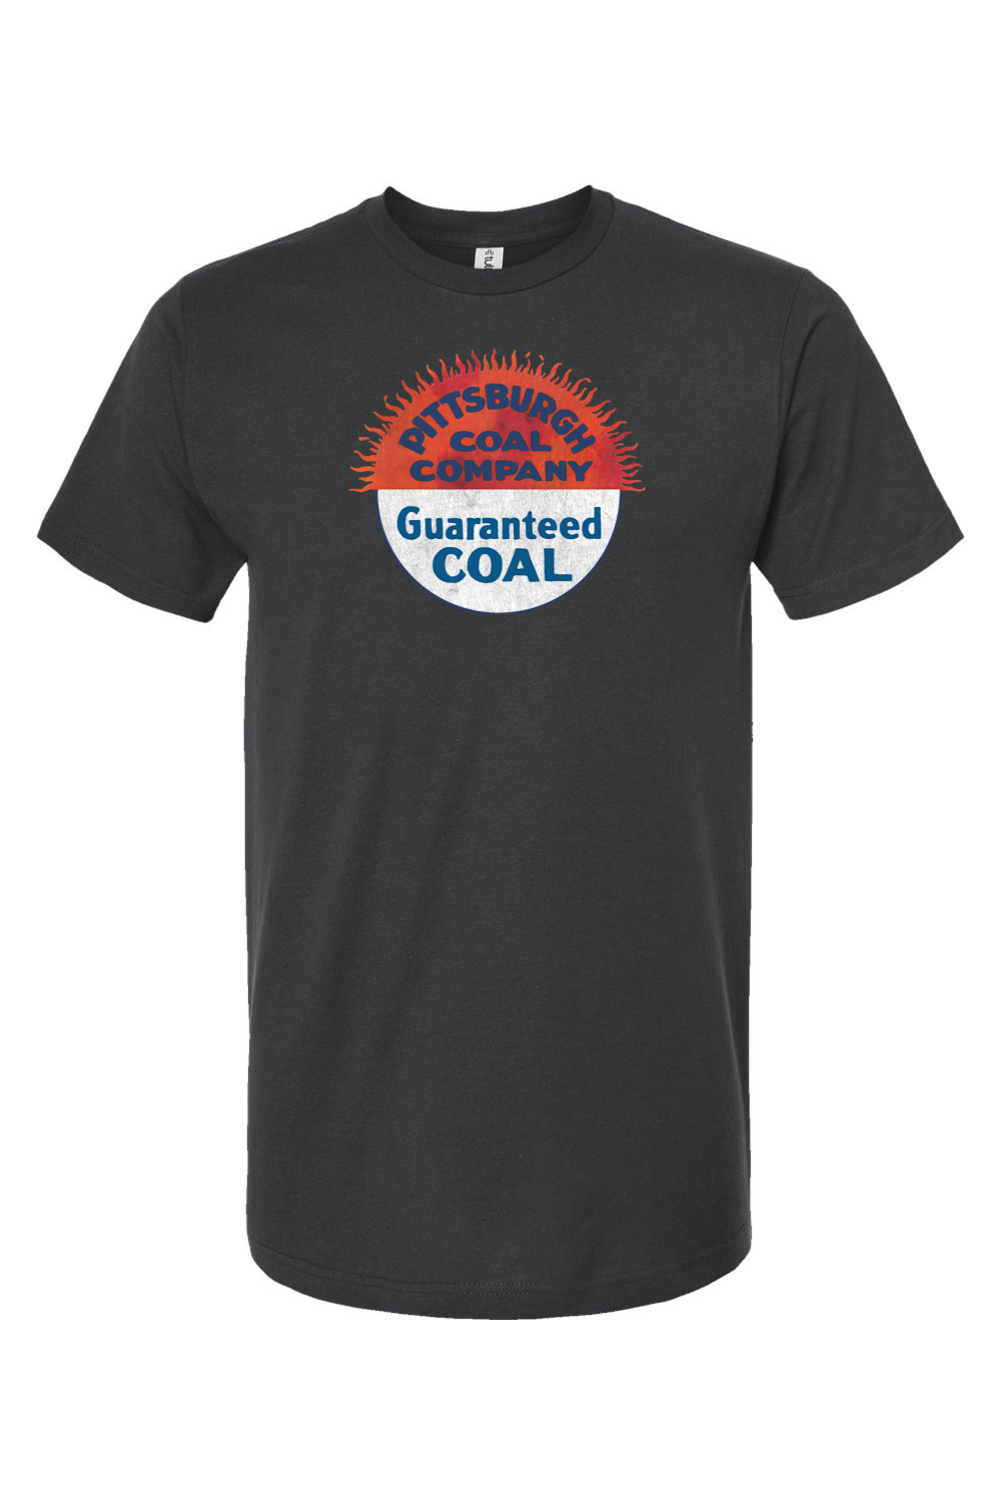 Pittsburgh Coal Company - Yinzylvania